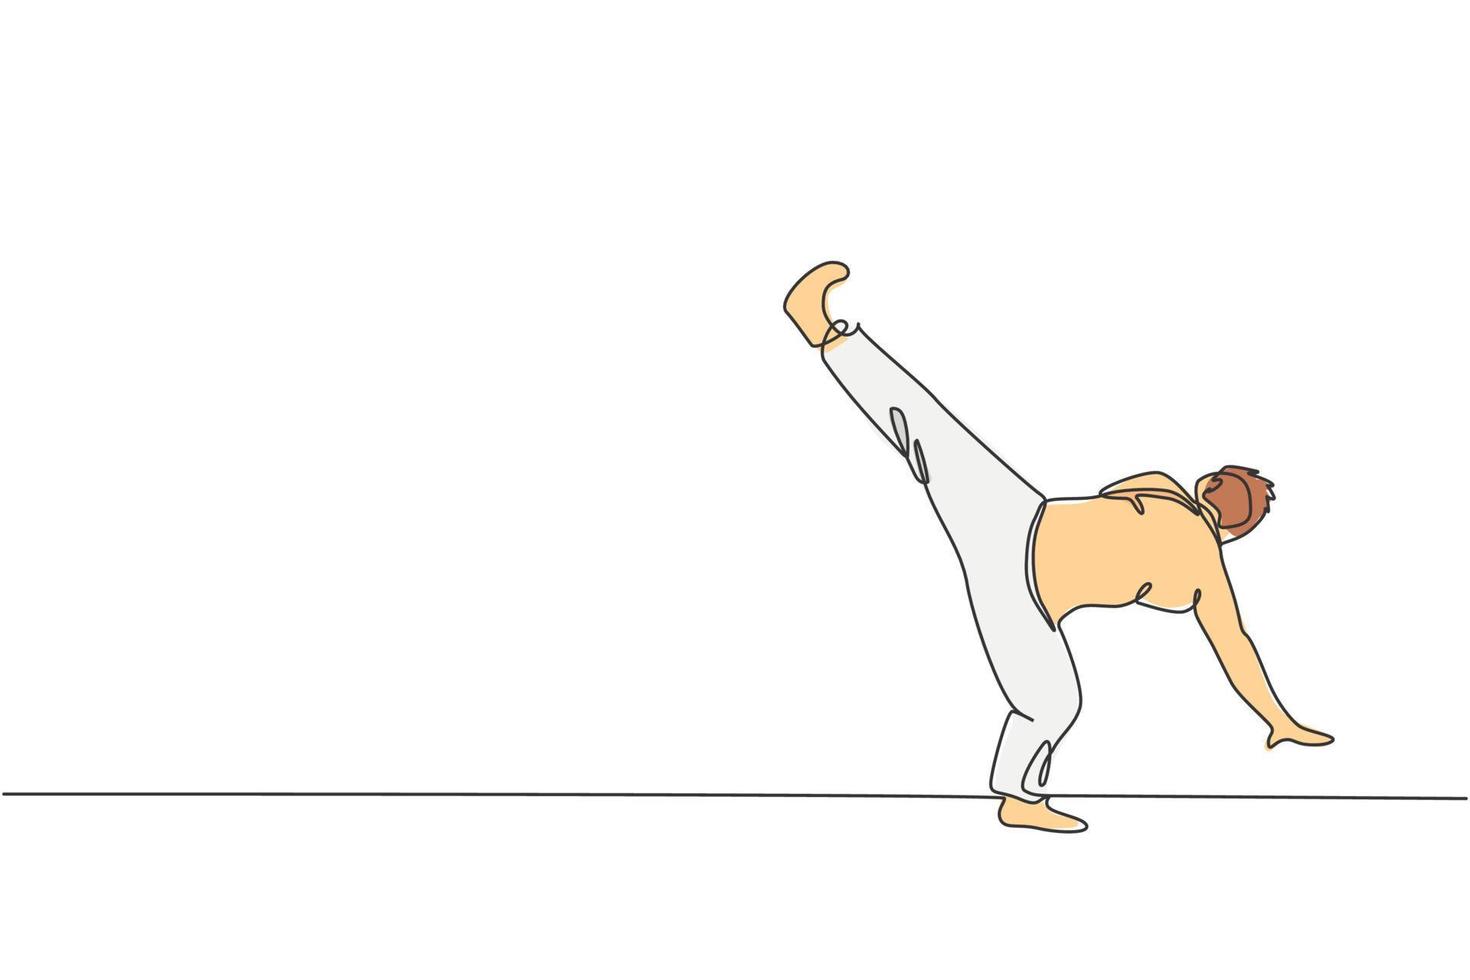 um único desenho de linha de dançarino de capoeira jovem enérgico executa ilustração em vetor gráfico de luta de dança. conceito de esporte de estilo de vida de arte marcial tradicional. design moderno de desenho de linha contínua